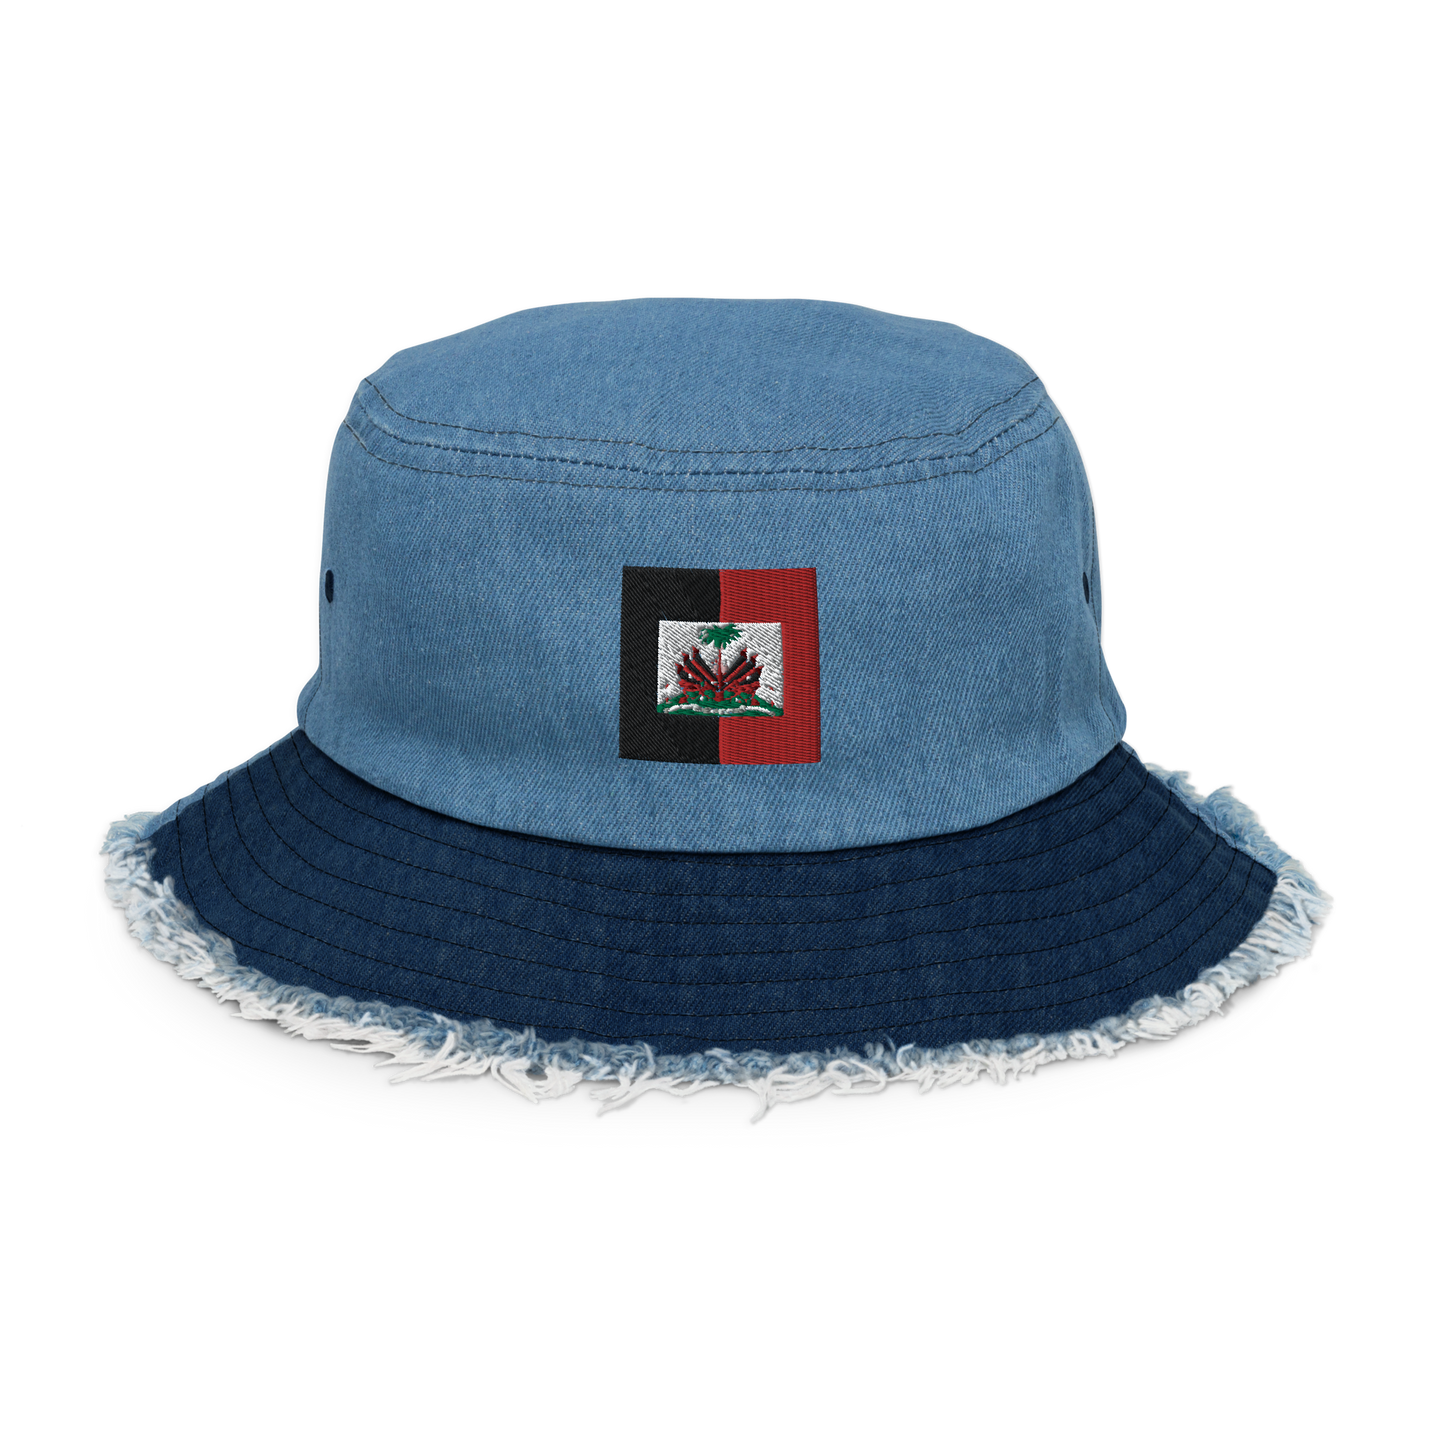 Distressed denim bucket islandrich hat